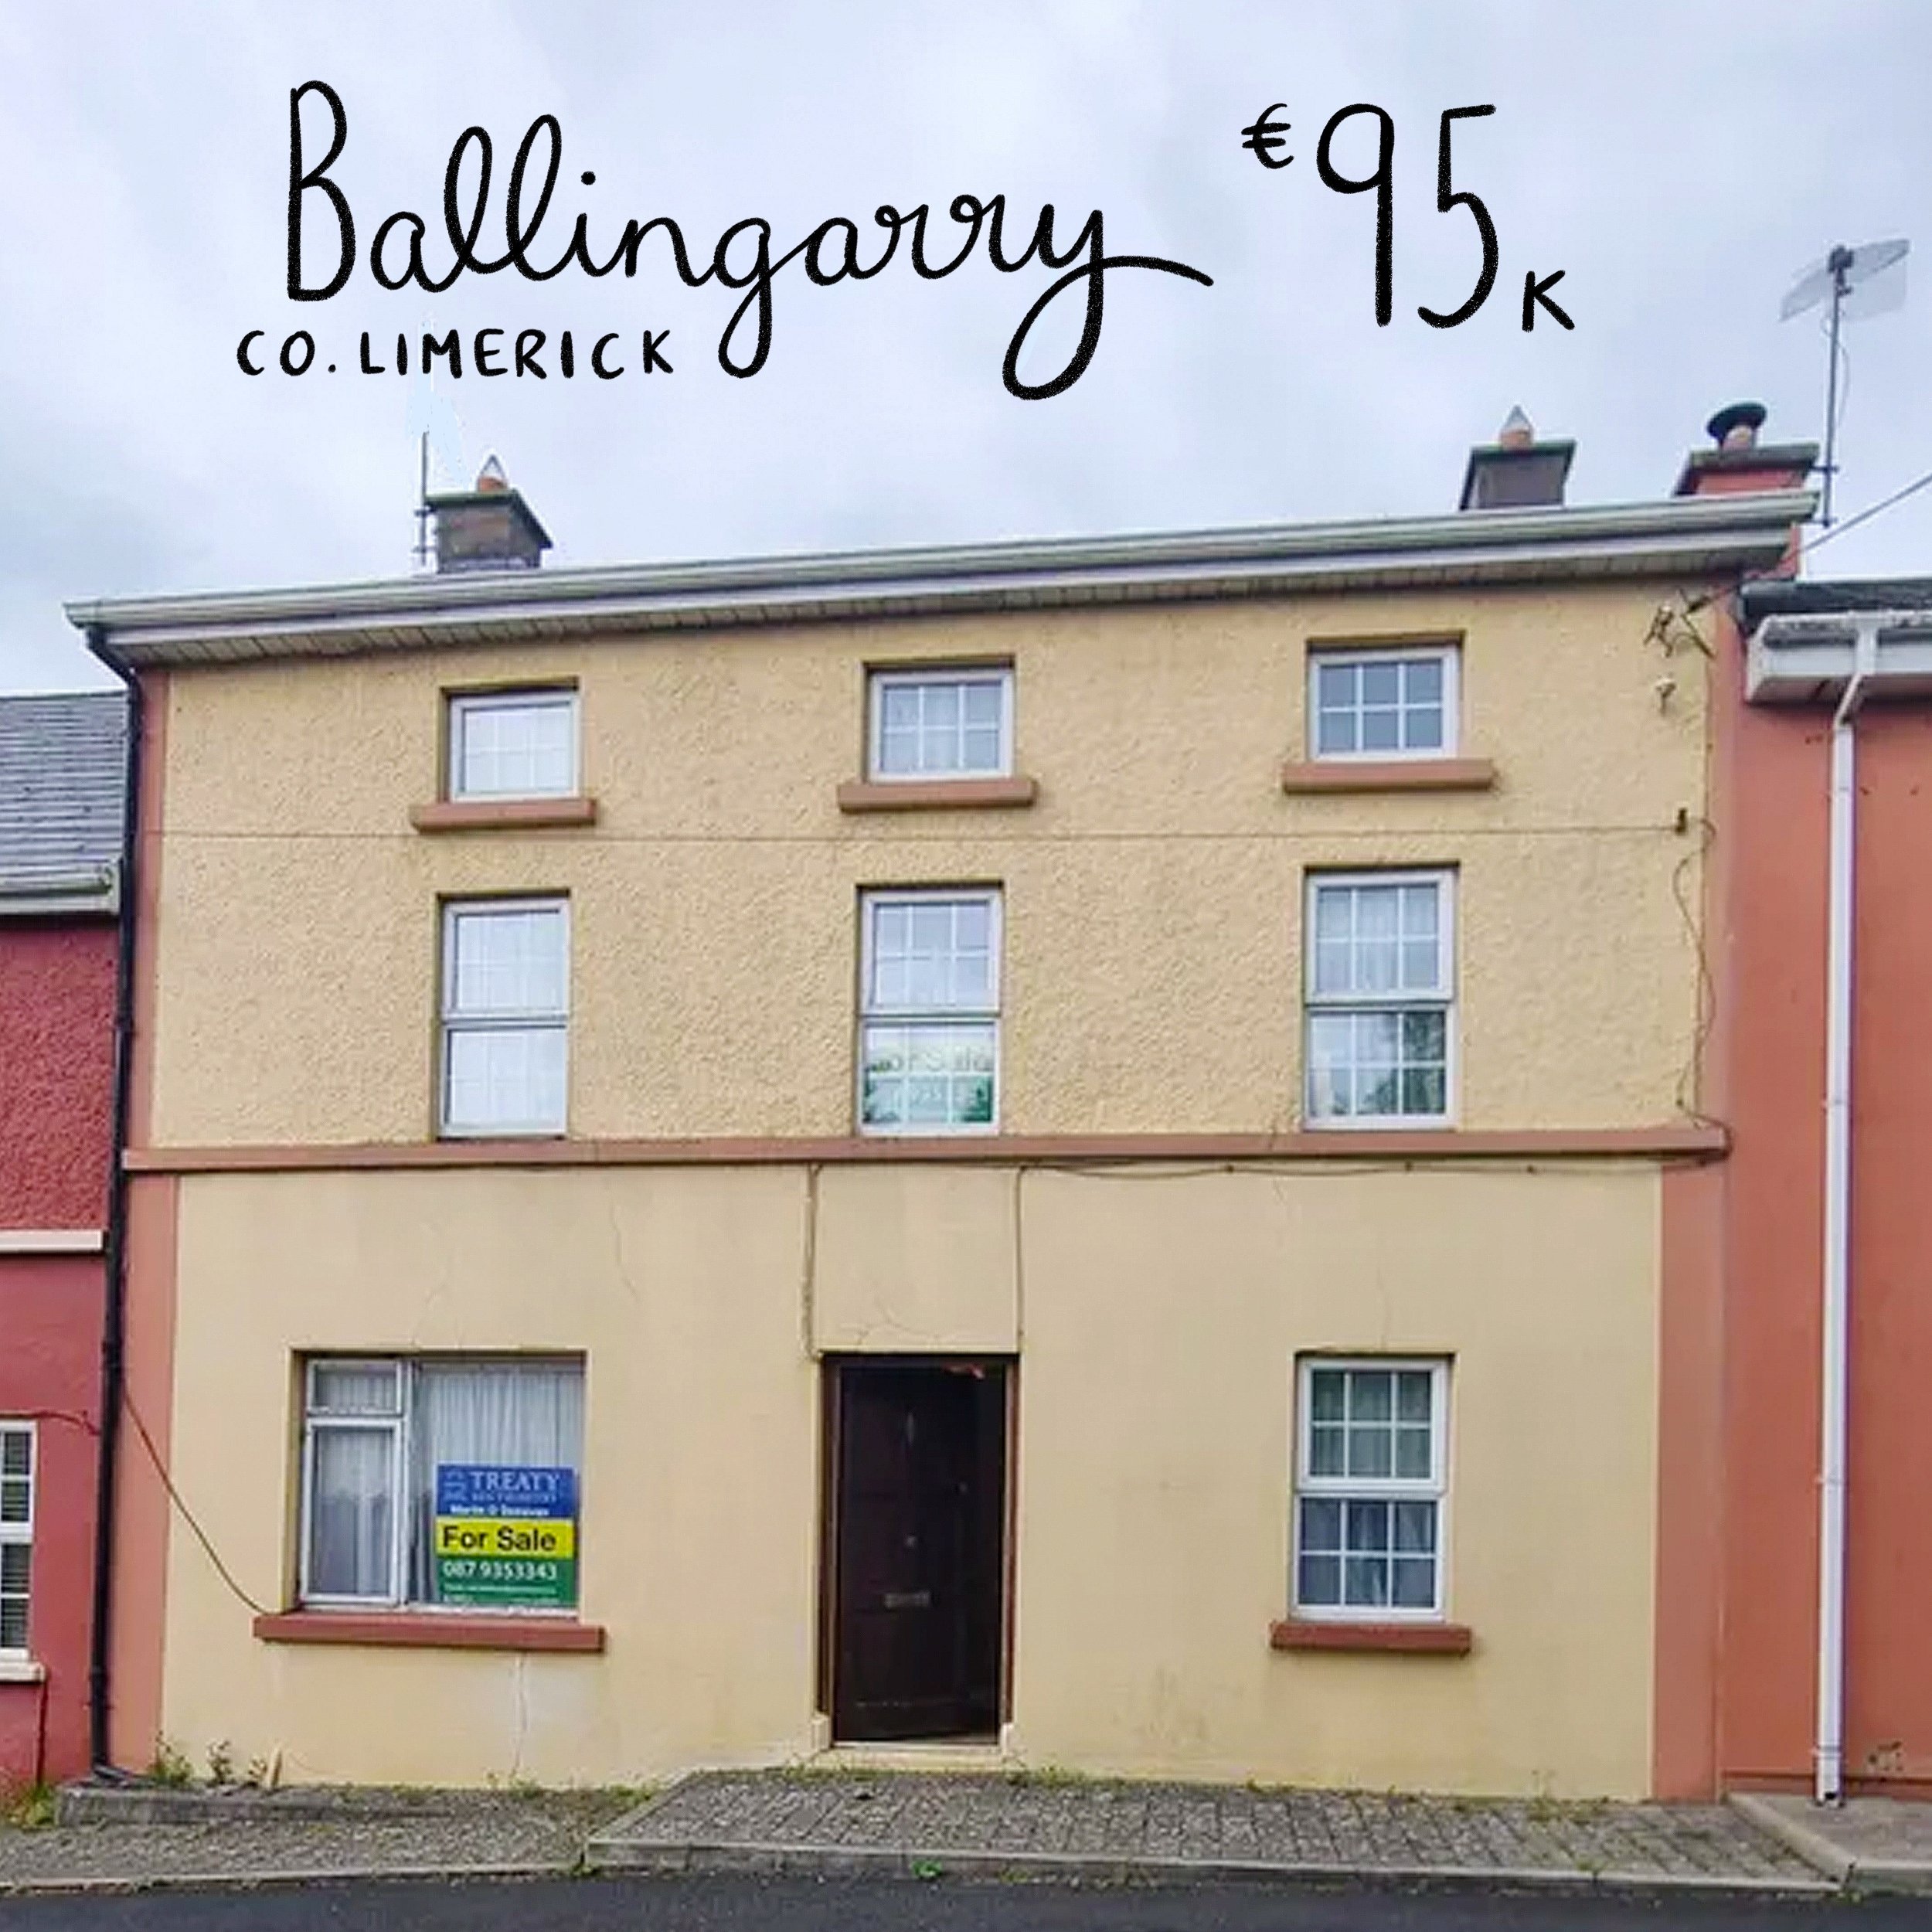 The Square, Ballingarry, Co. Limerick. €95k